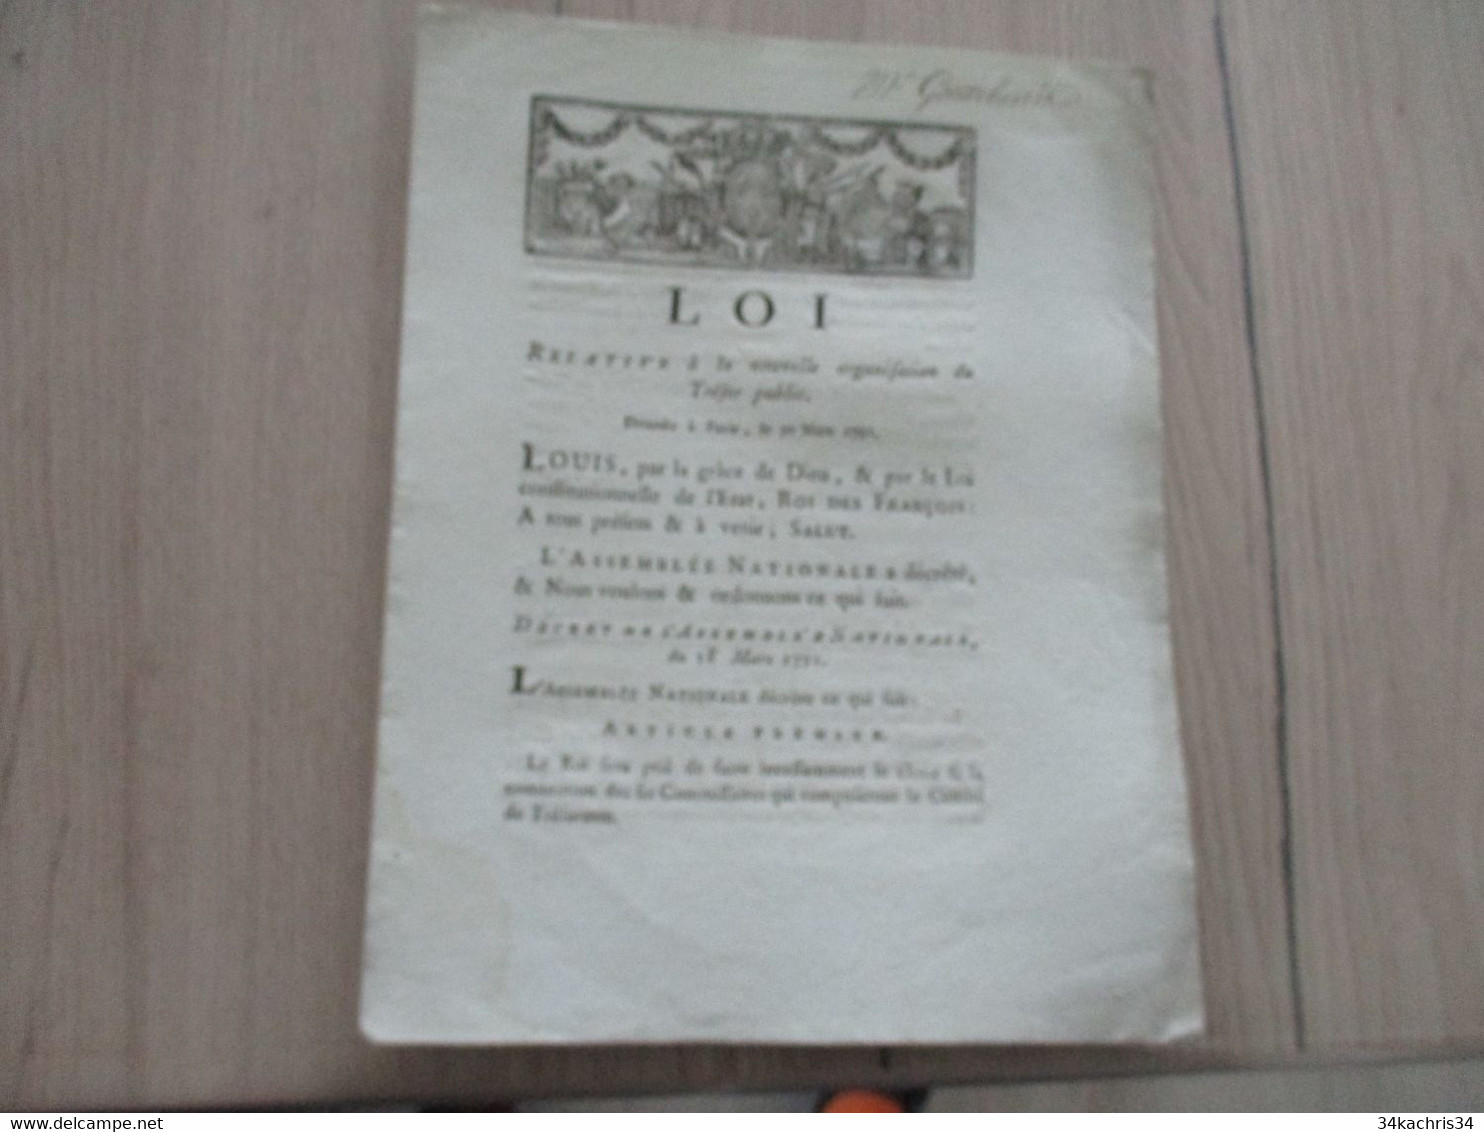 Révolution Loi 30 Mars 1791  Relative à La Nouvelle Organisation Du Trésor Public - Decrees & Laws